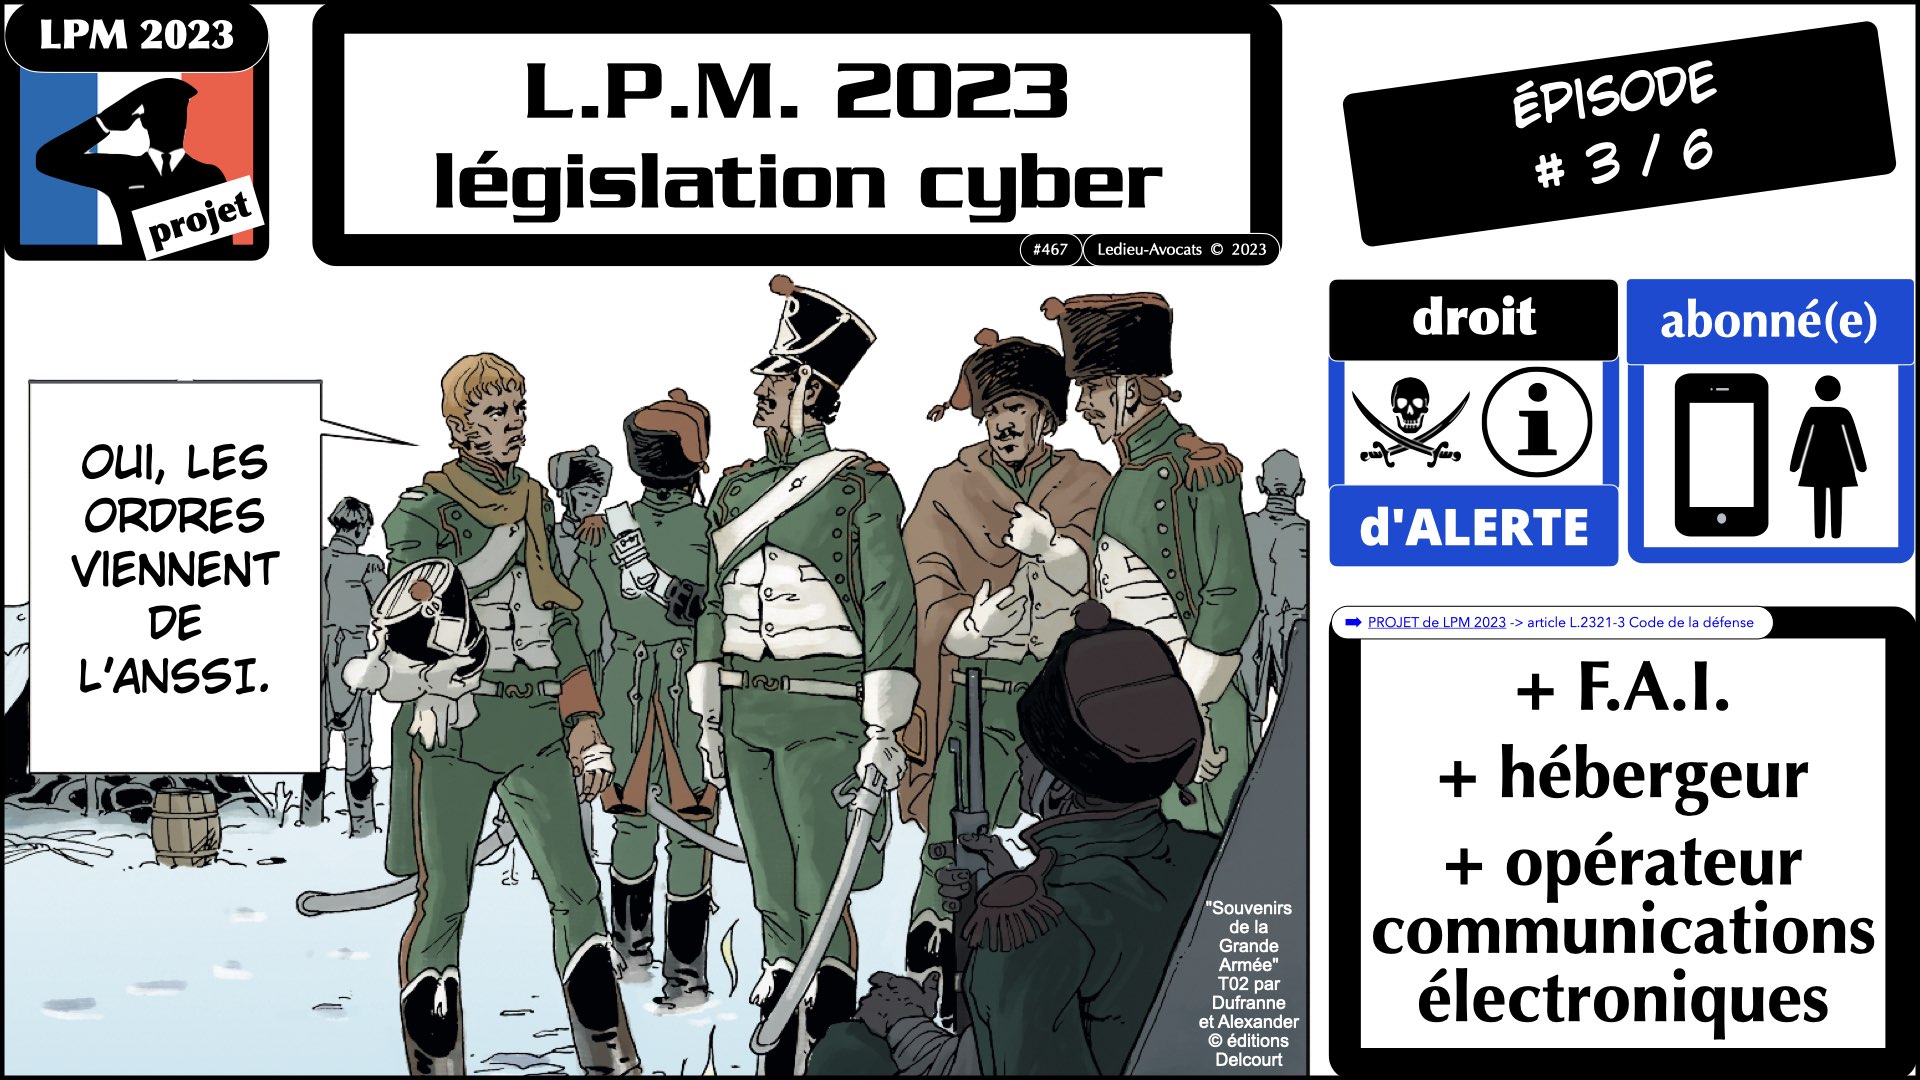 cyber sécurité projet LPM 2023 © Ledieu-Avocats 26-04-2023.090